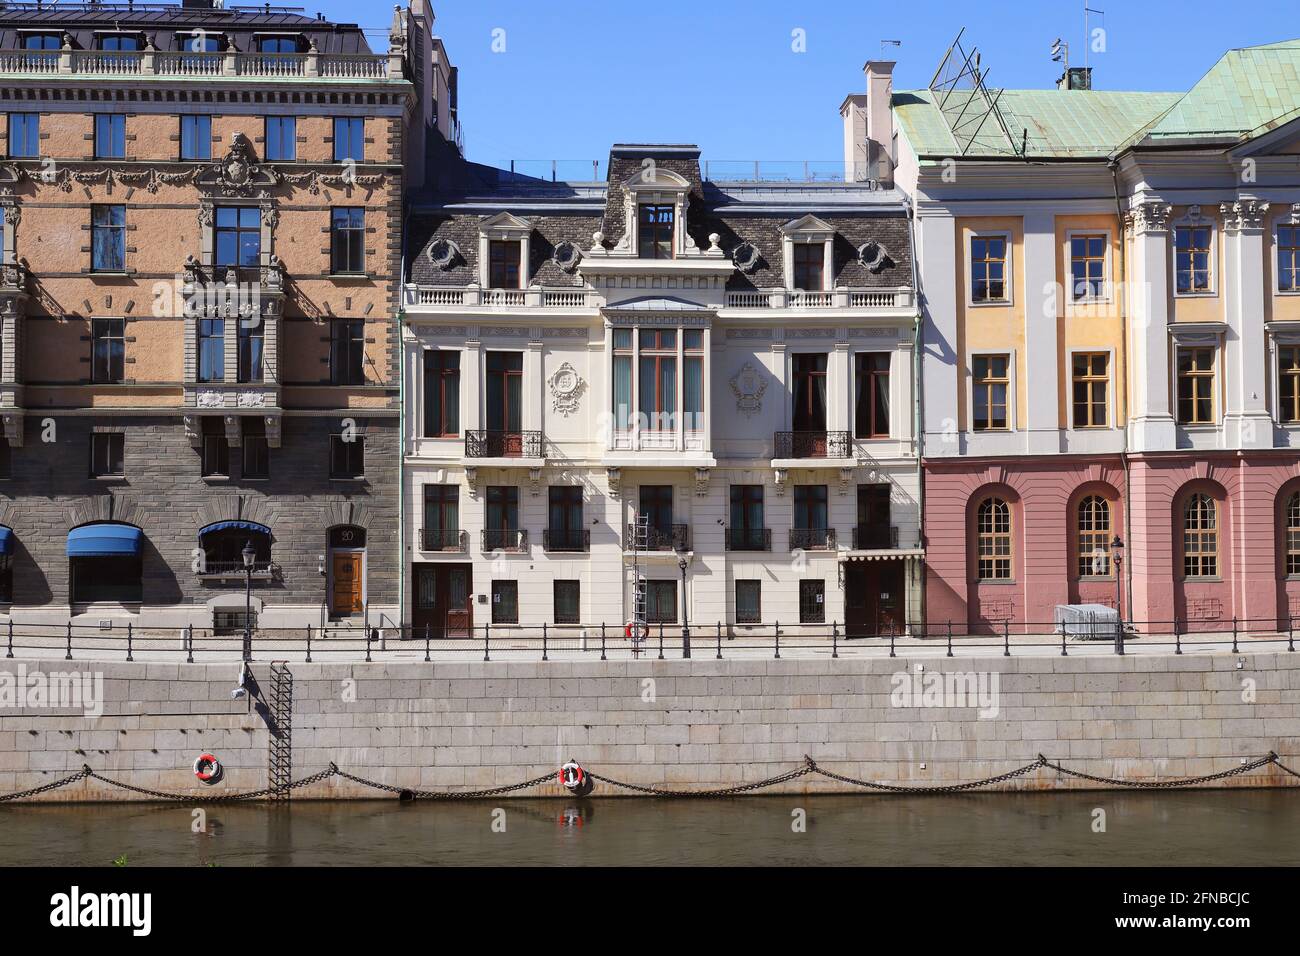 Estocolmo, Suecia - 12 de mayo de 2021: El Palacio Sager en la calle Stromgatan 18 es la residencia oficial del primer ministro de Suecia. Foto de stock